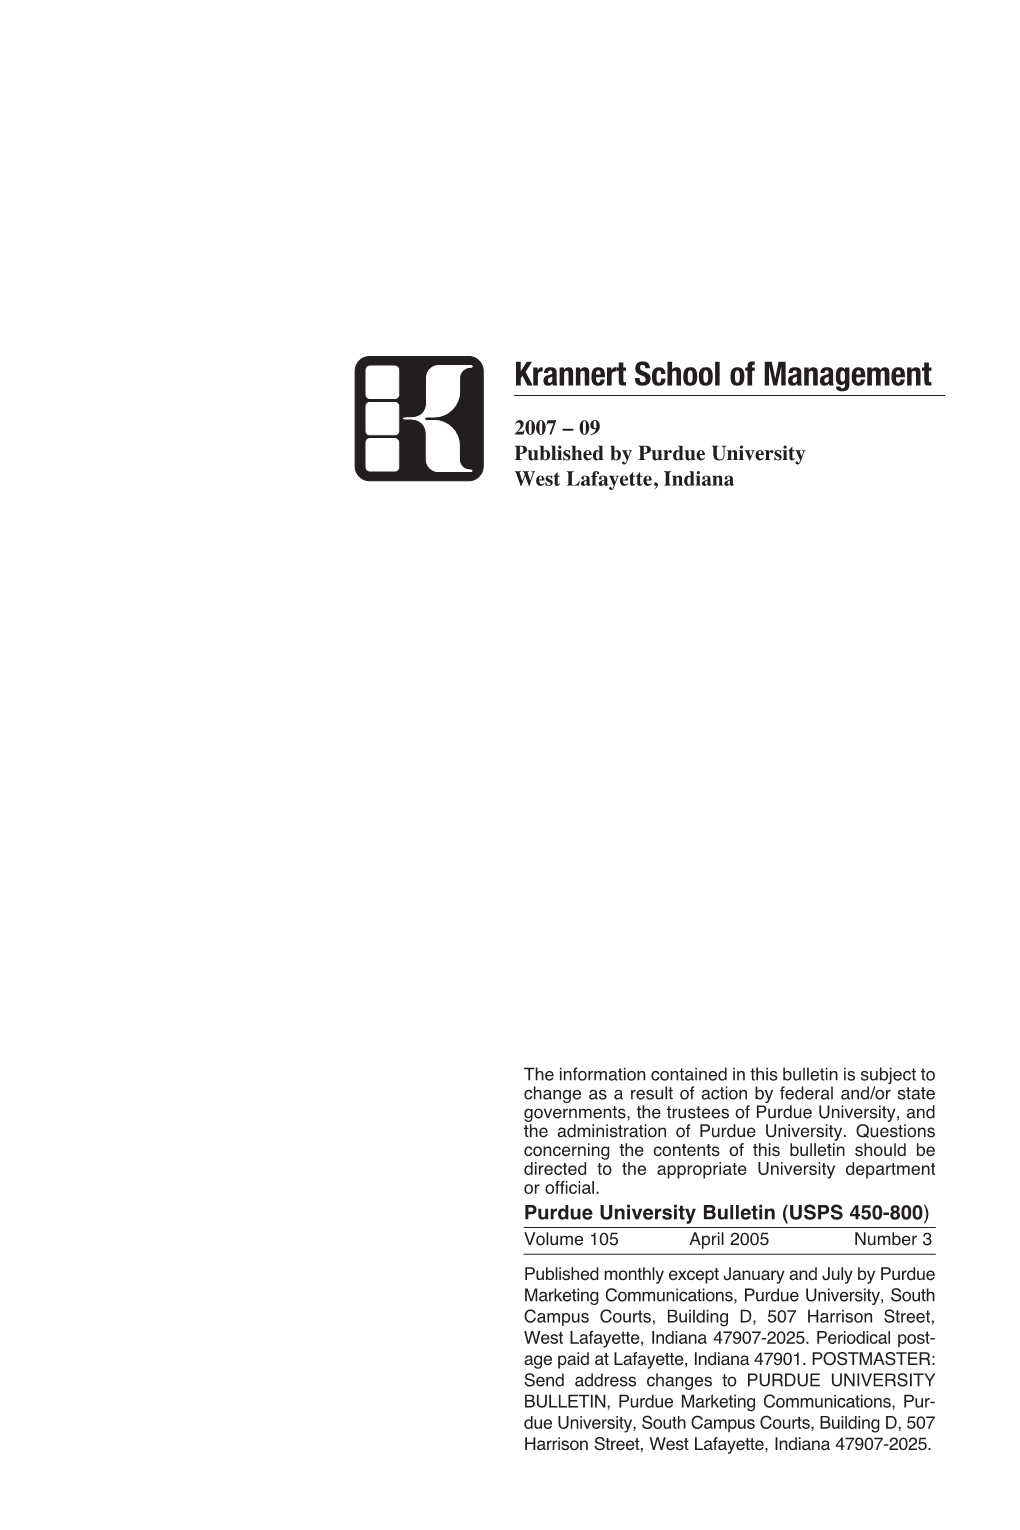 Krannert School of Management